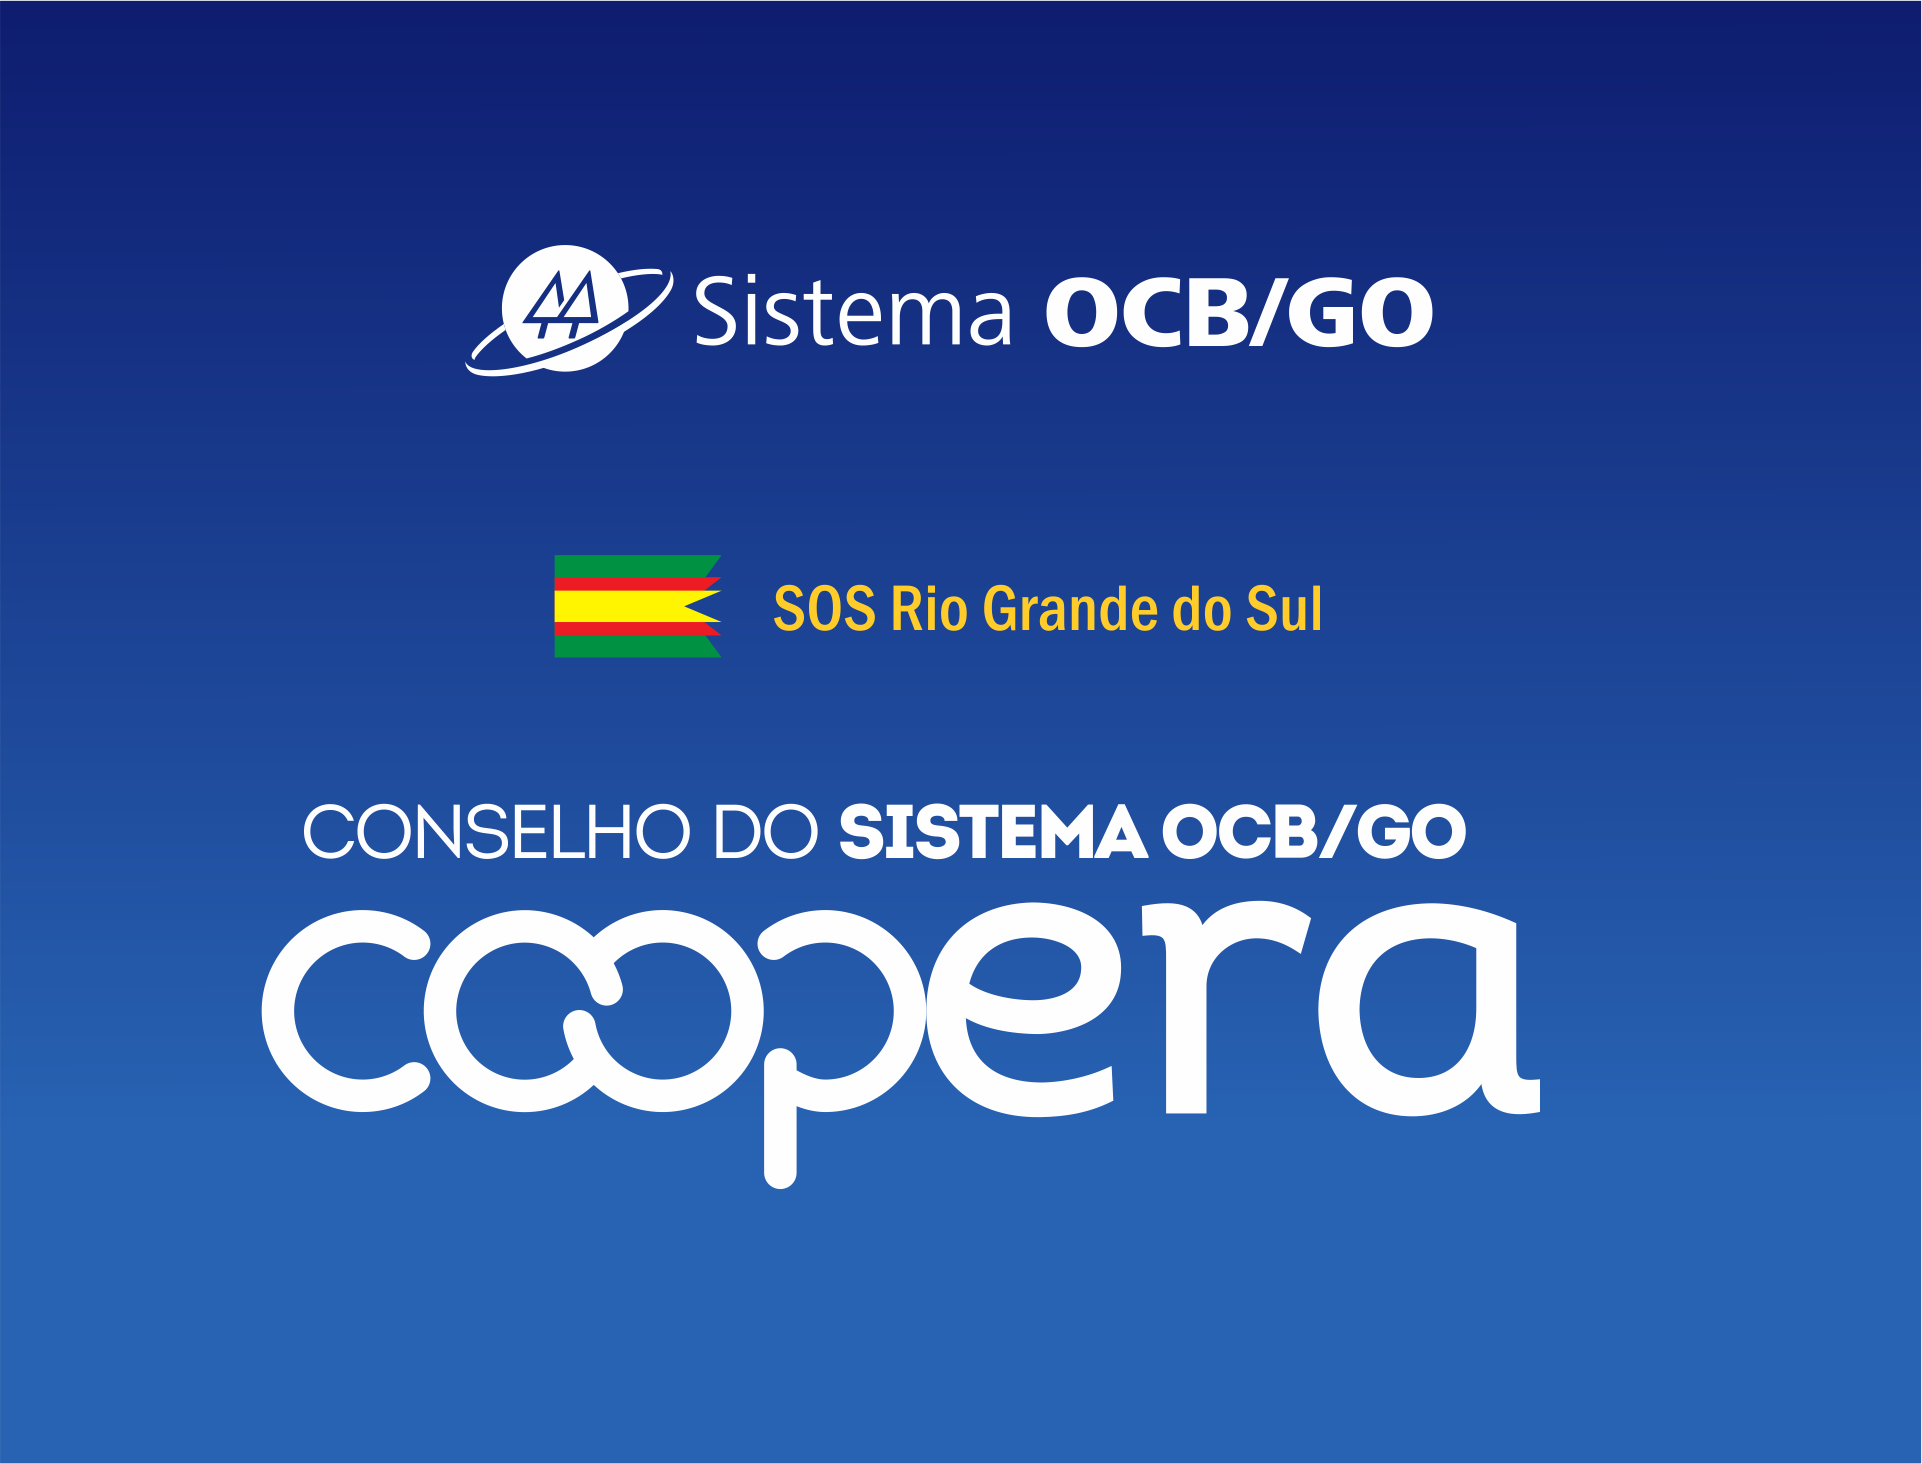 Cooperativas aderem à campanha de cooperação
do Sistema OCB/GO com o Rio Grande do Sul